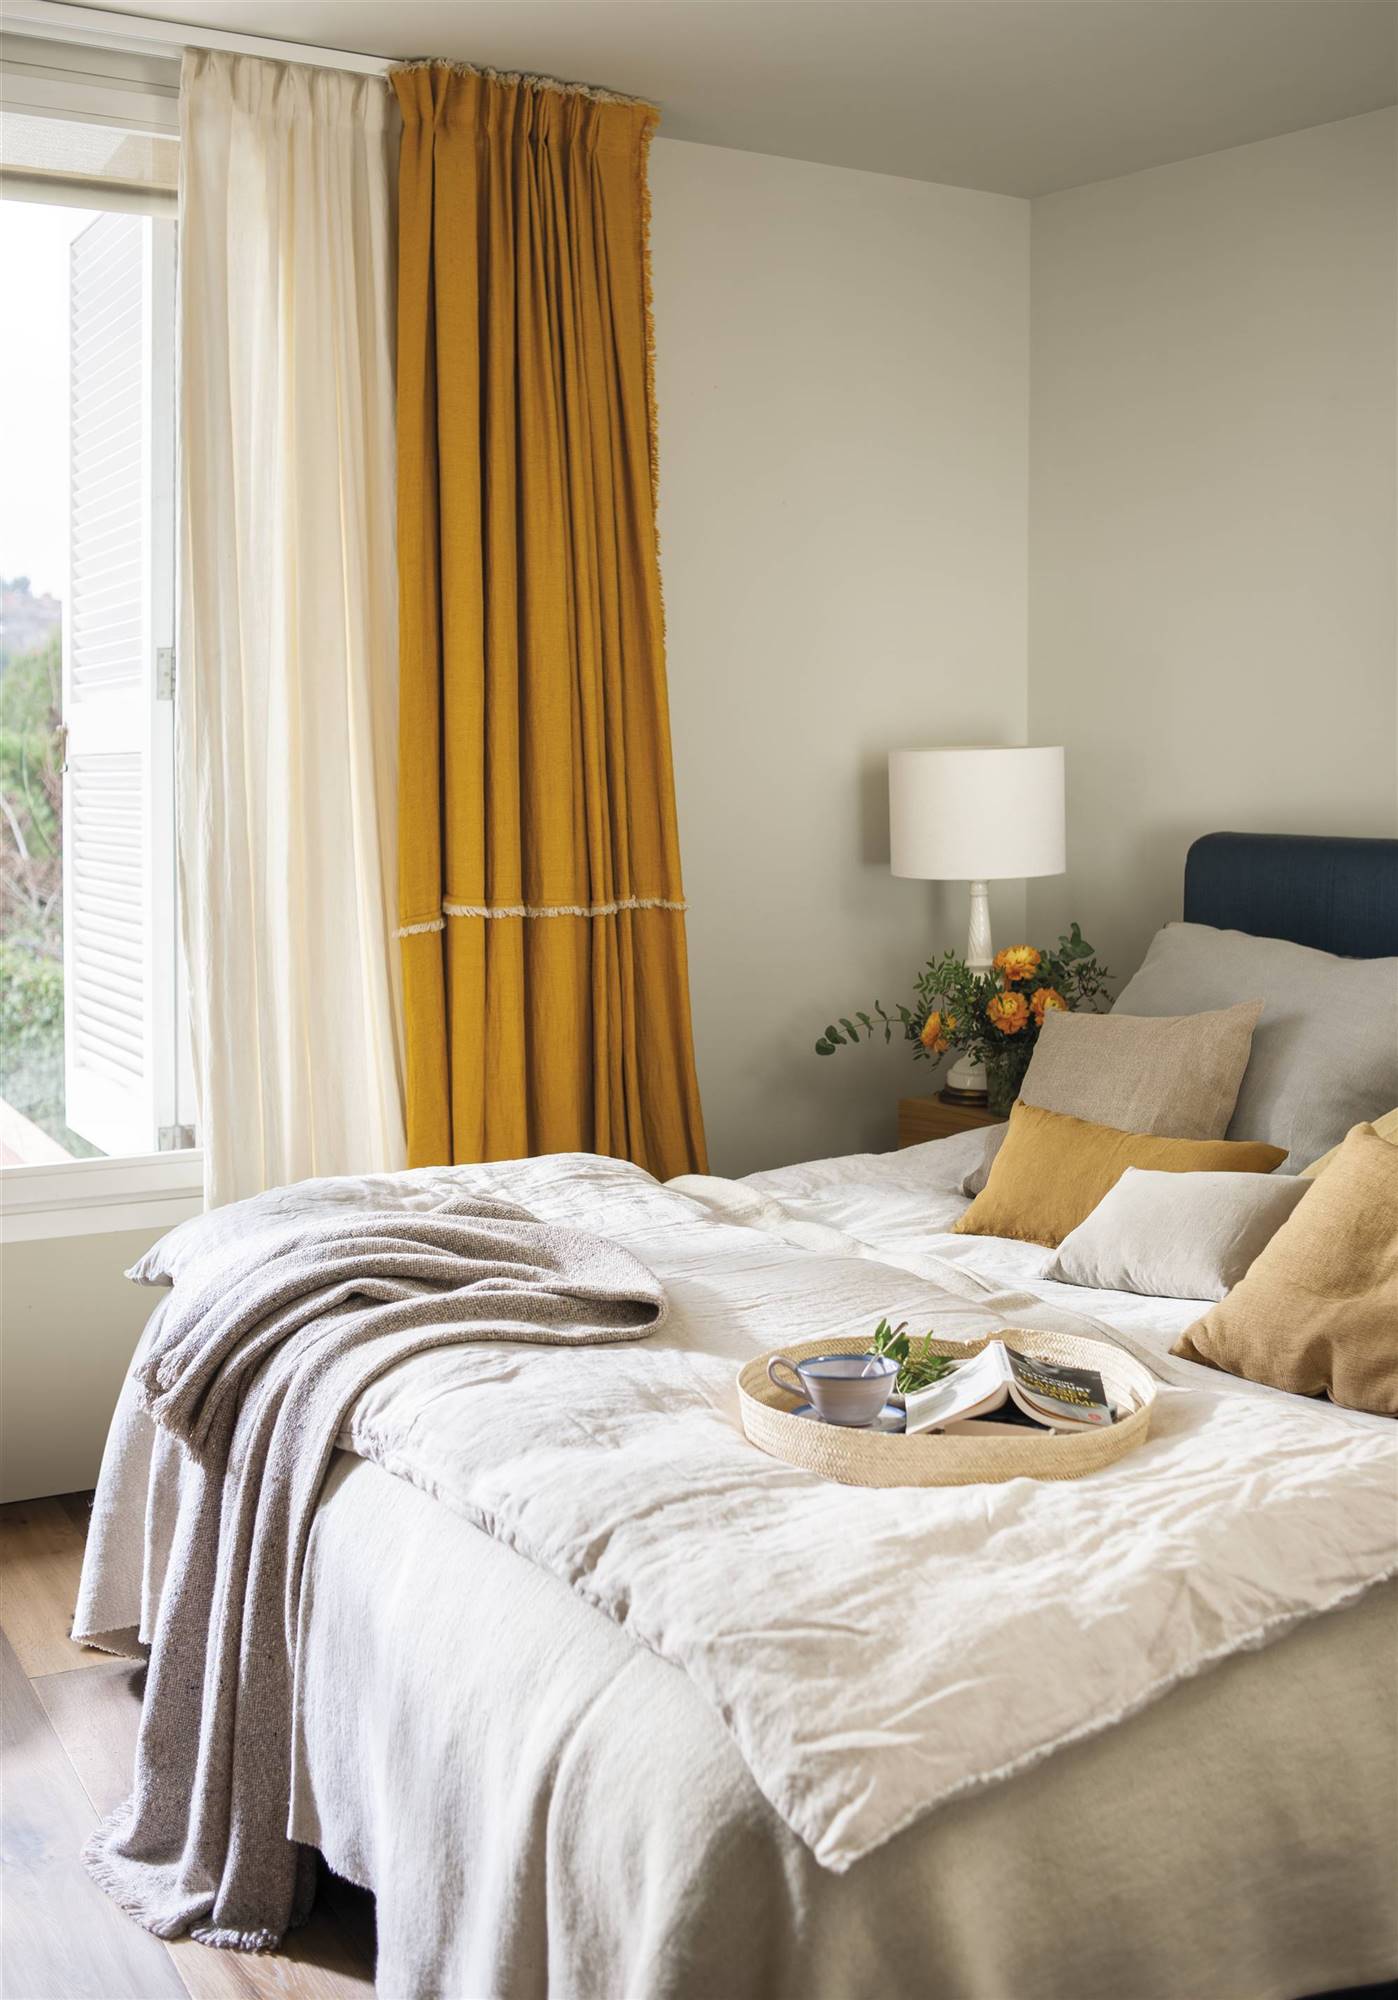 Dormitorio en tonos neutros y cortinas en color mostaza.  